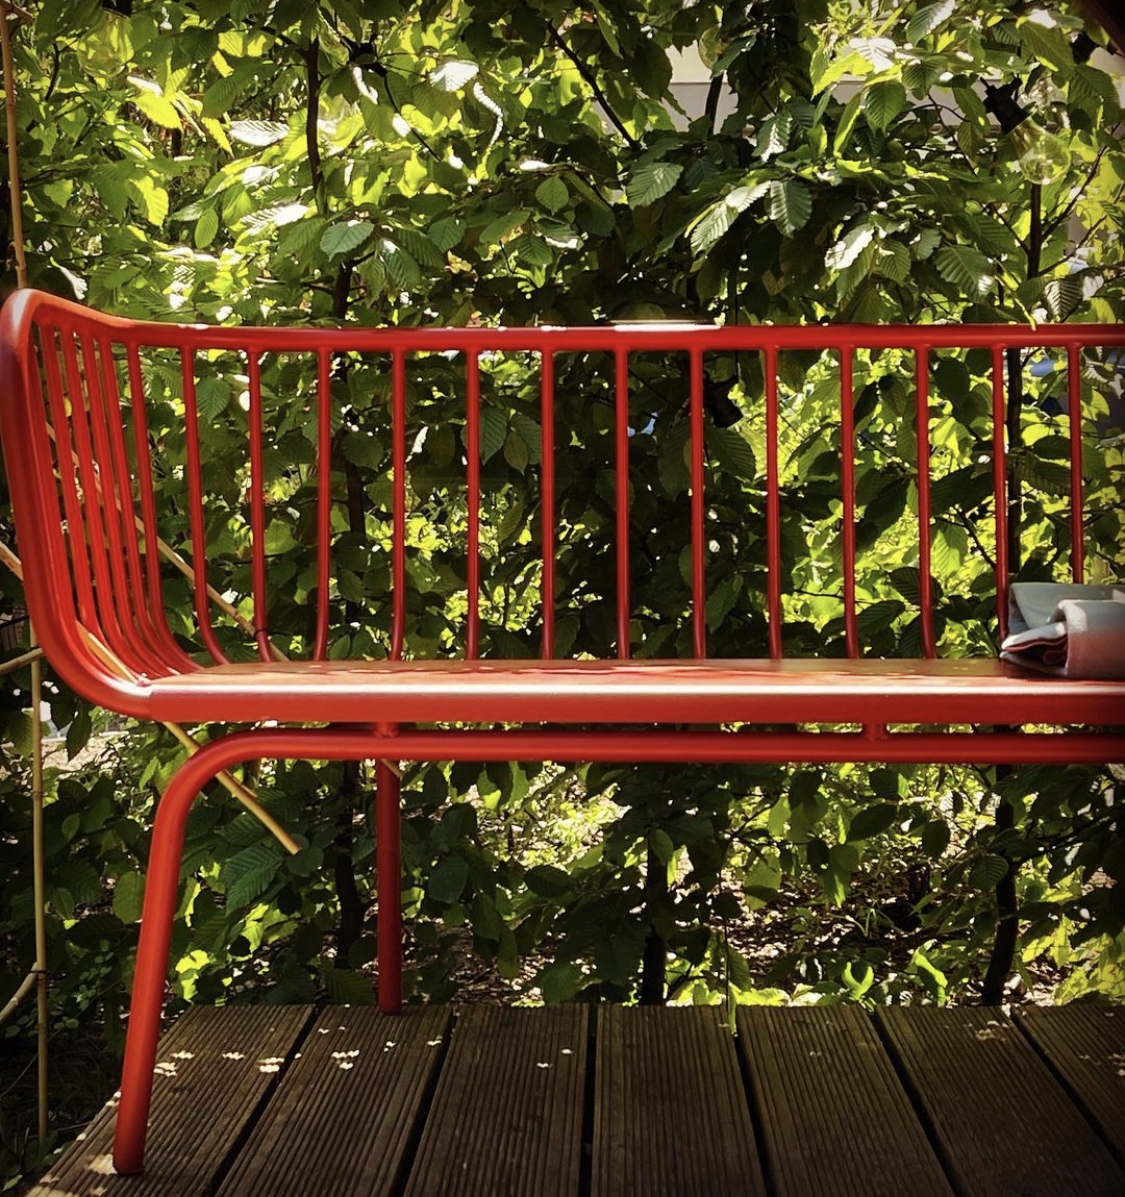 Die rote Bank

#sommer #summertime #gartenbank #rot #draußen #terrasse #outdoor #garten